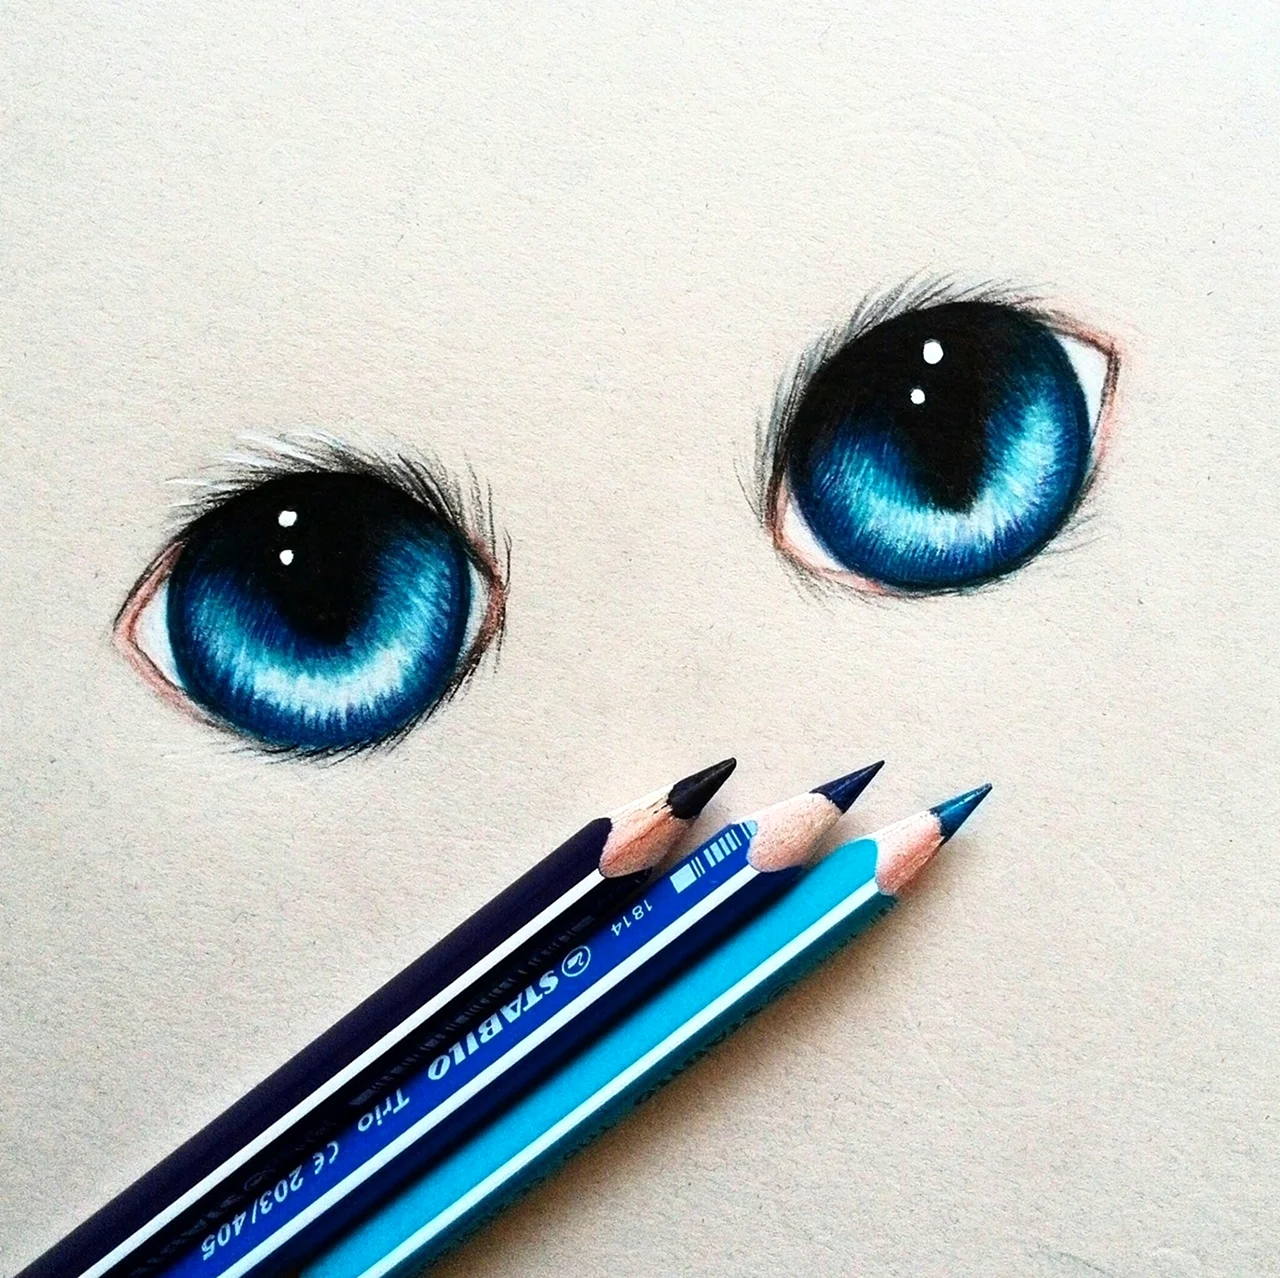 Кошачий глаз карандашом. Для срисовки